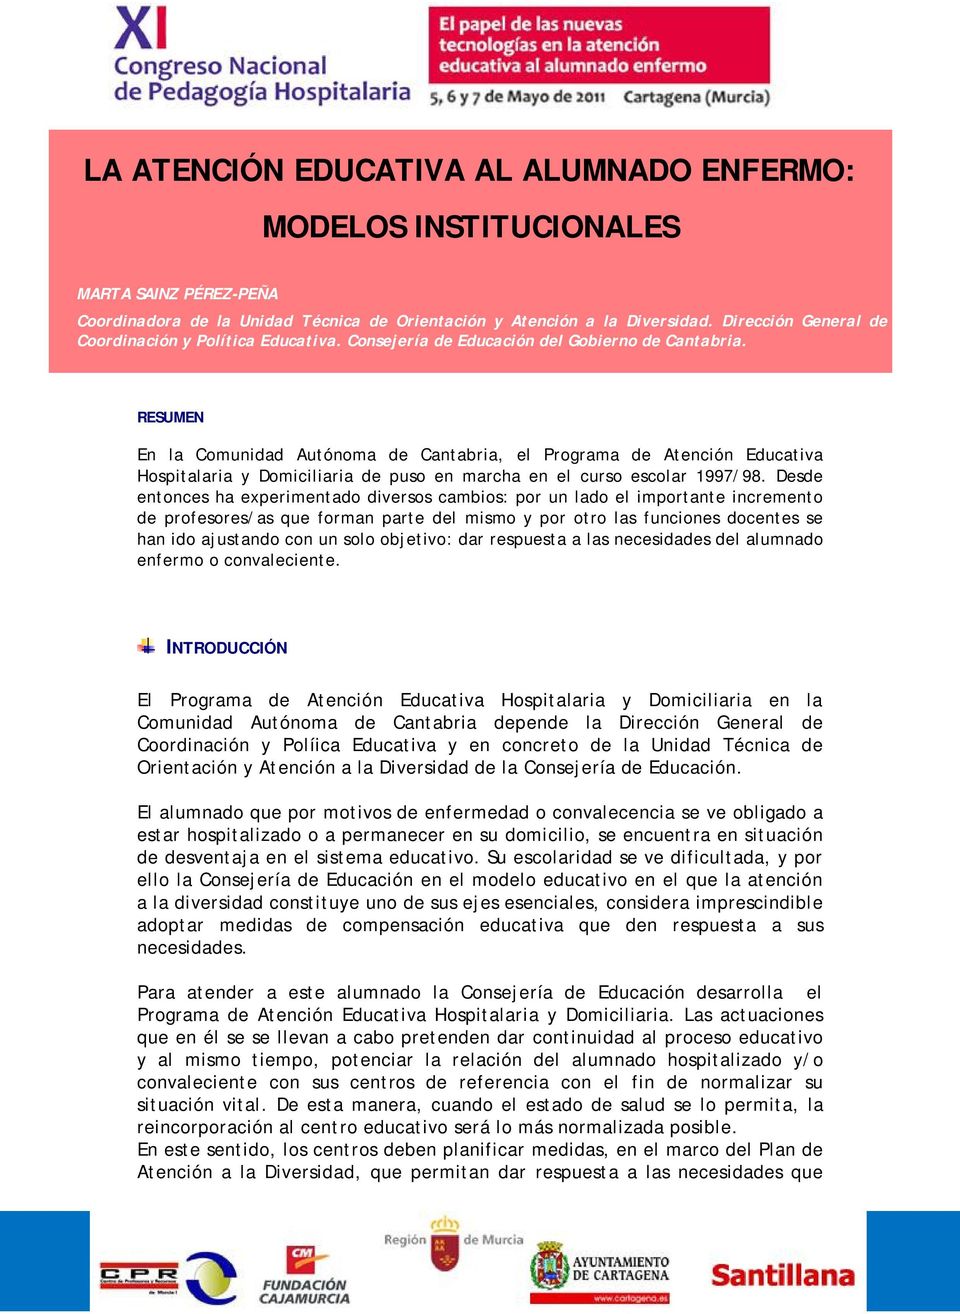 RESUMEN En la Comunidad Autónoma de Cantabria, el Programa de Atención Educativa Hospitalaria y Domiciliaria de puso en marcha en el curso escolar 1997/98.